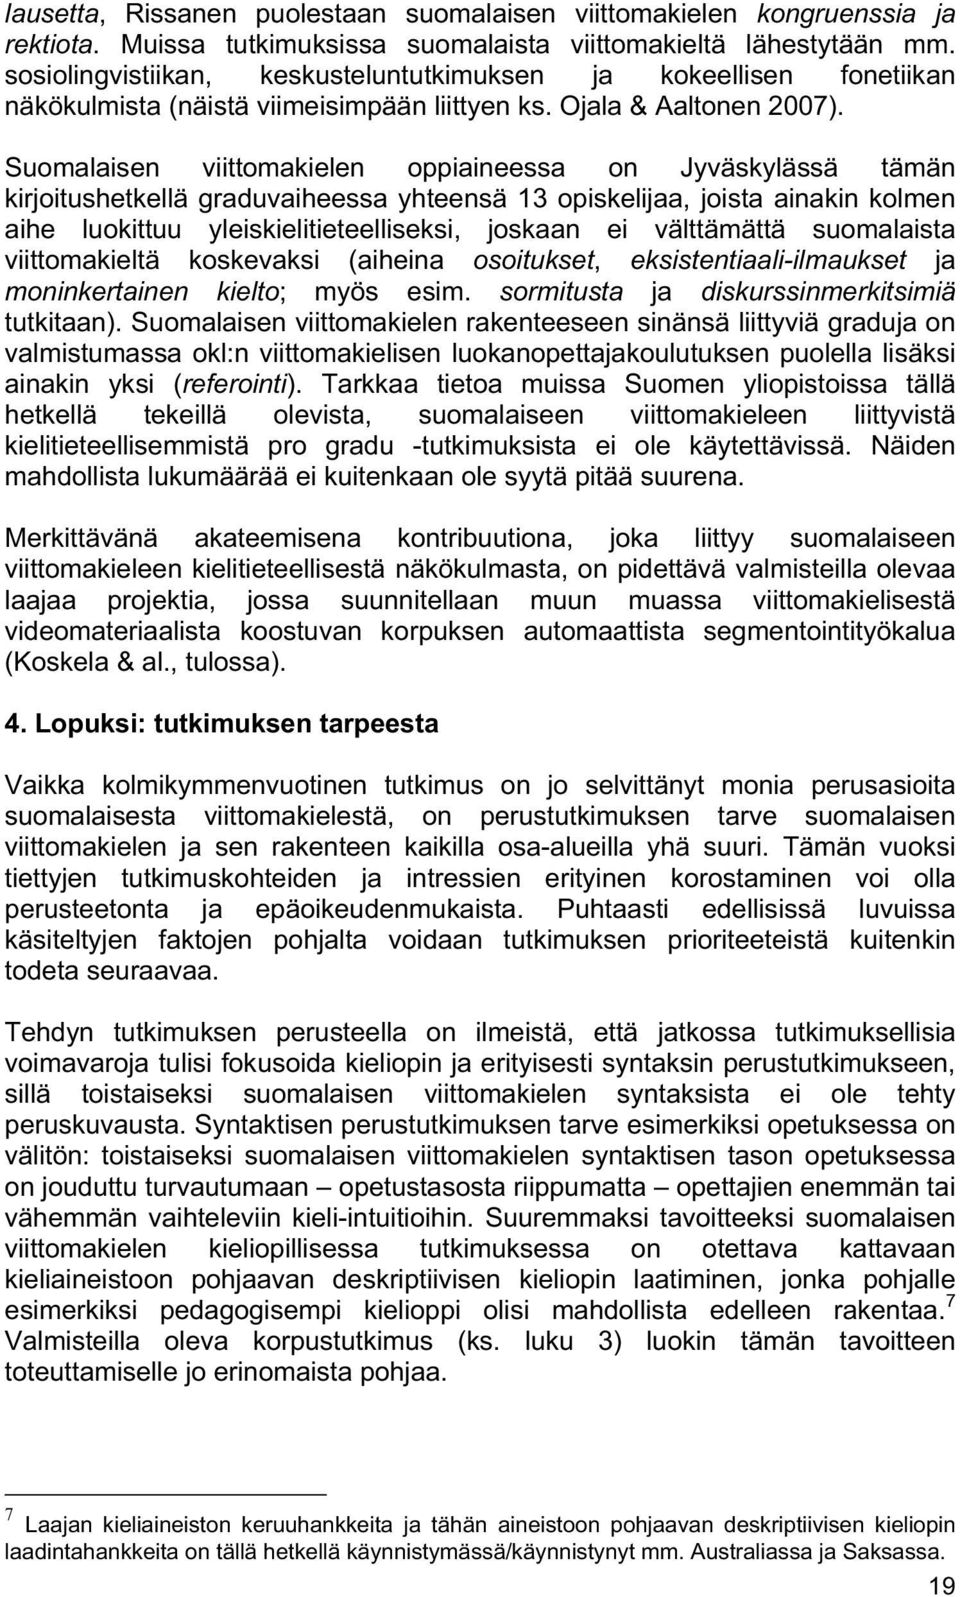 Suomalaisen viittomakielen oppiaineessa on Jyväskylässä tämän kirjoitushetkellä graduvaiheessa yhteensä 13 opiskelijaa, joista ainakin kolmen aihe luokittuu yleiskielitieteelliseksi, joskaan ei